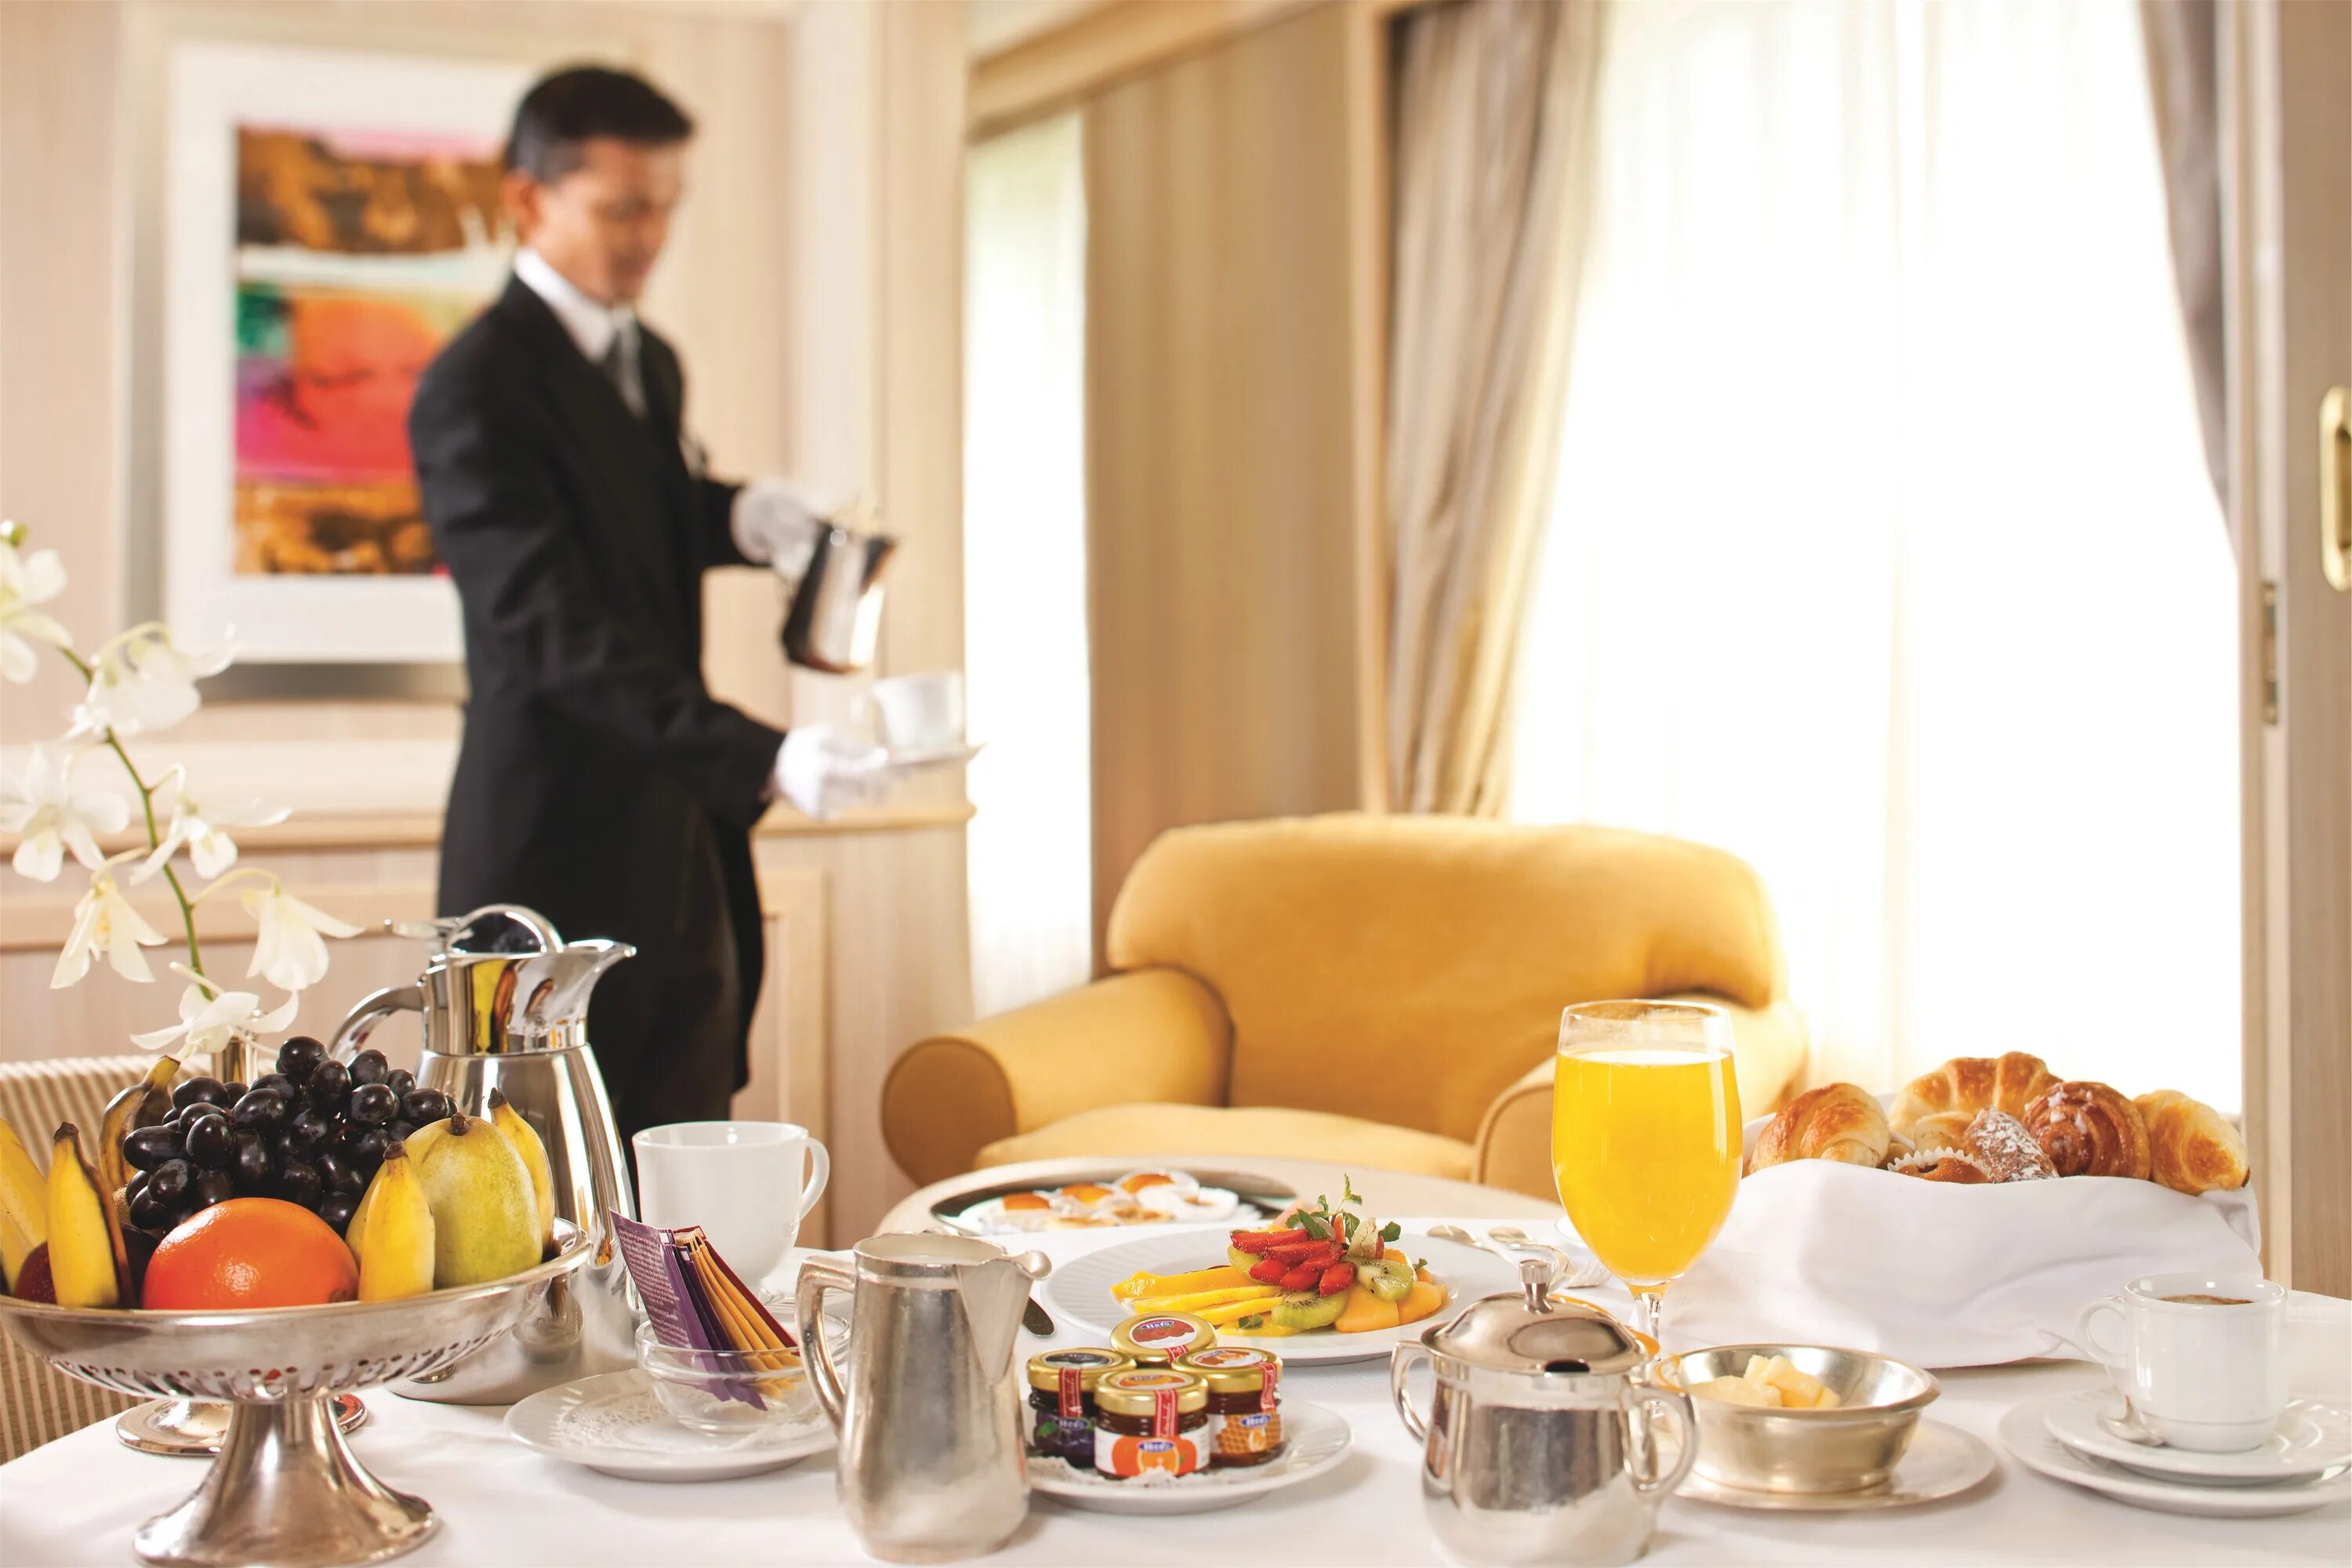 Рум сервис в гостинице. Завтрак в отеле рум сервис. Завтрак в гостинице. Завтрак в номере отеля. Подготовка к ужину